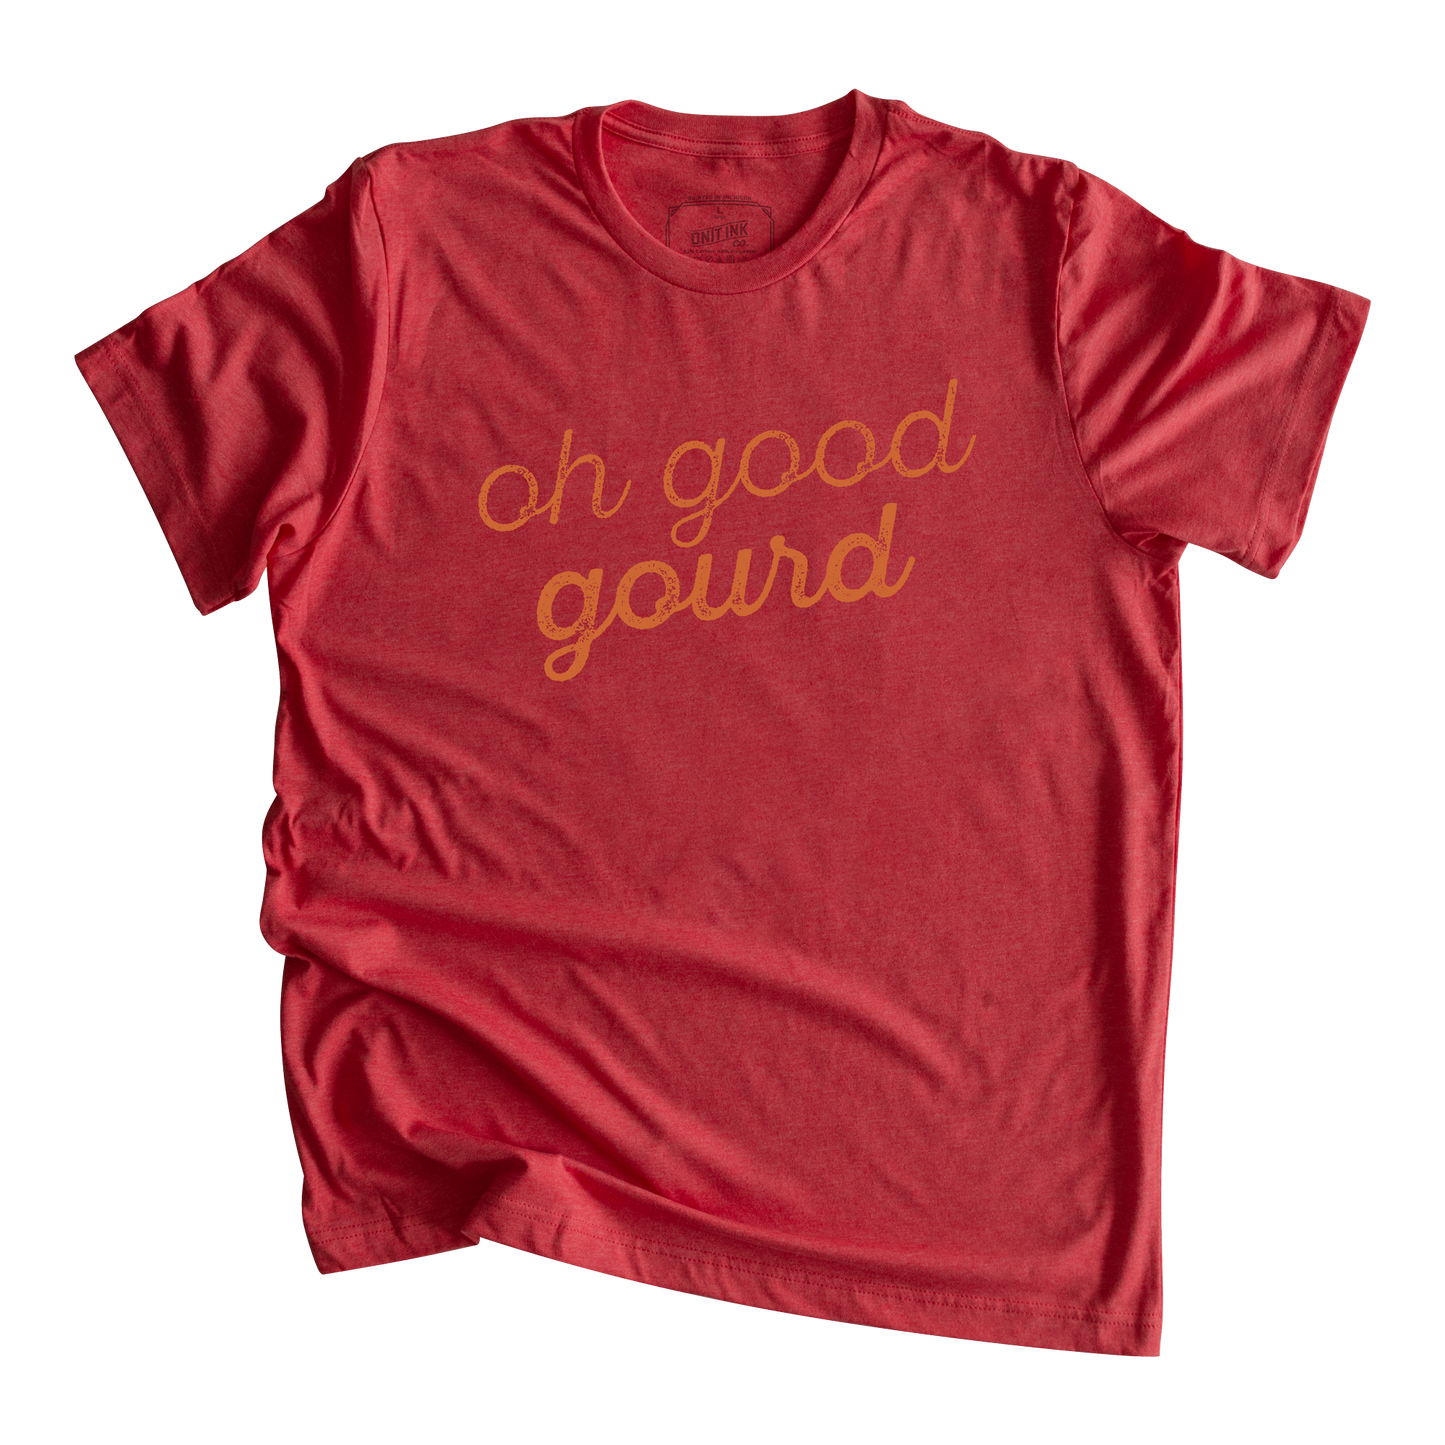 Oh Good Gourd T-Shirt